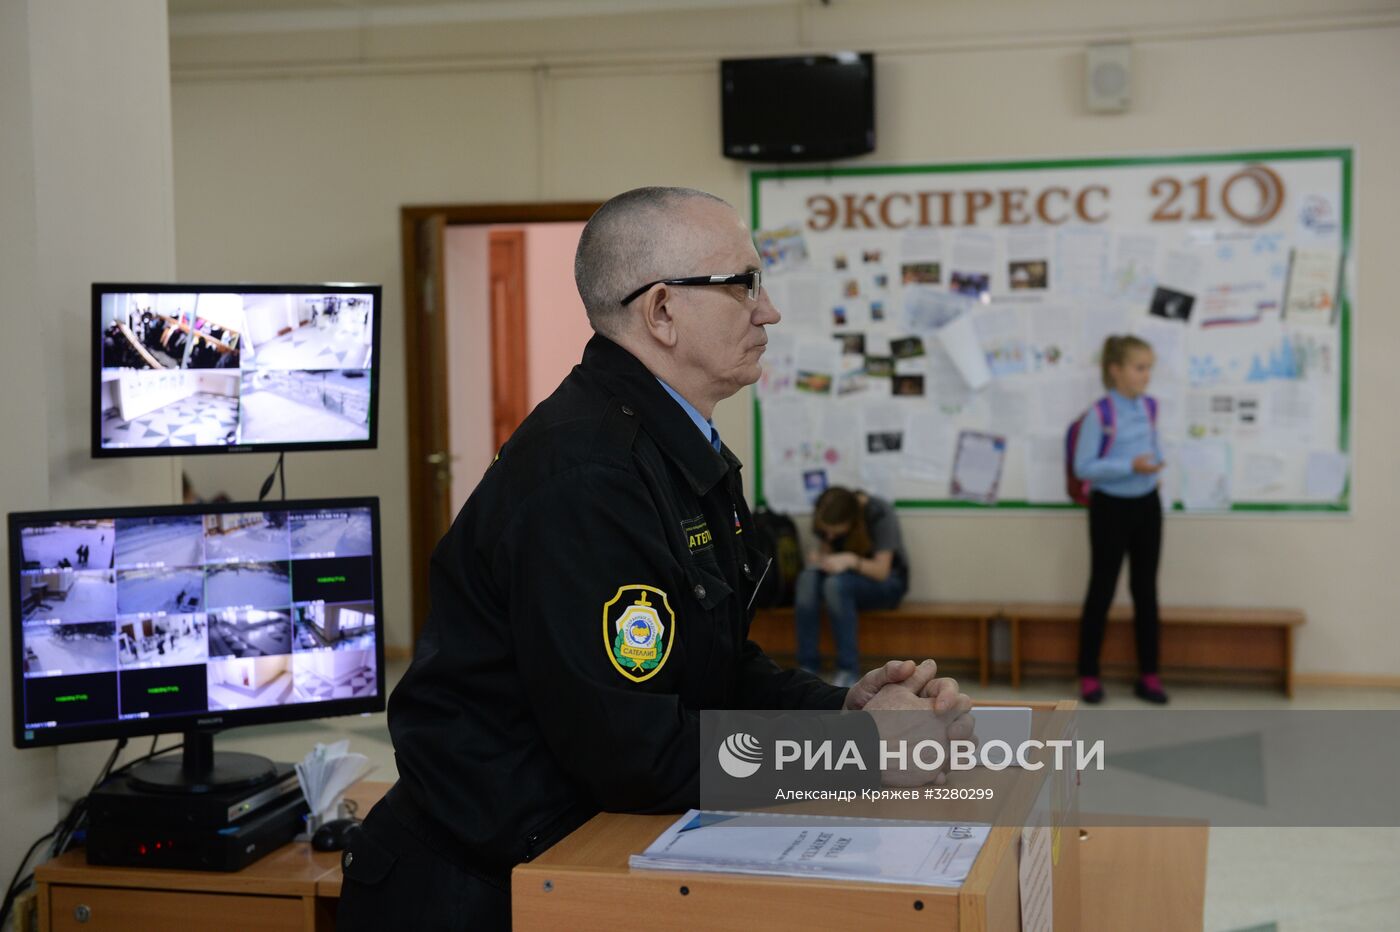 Обеспечение безопасности в российских школах